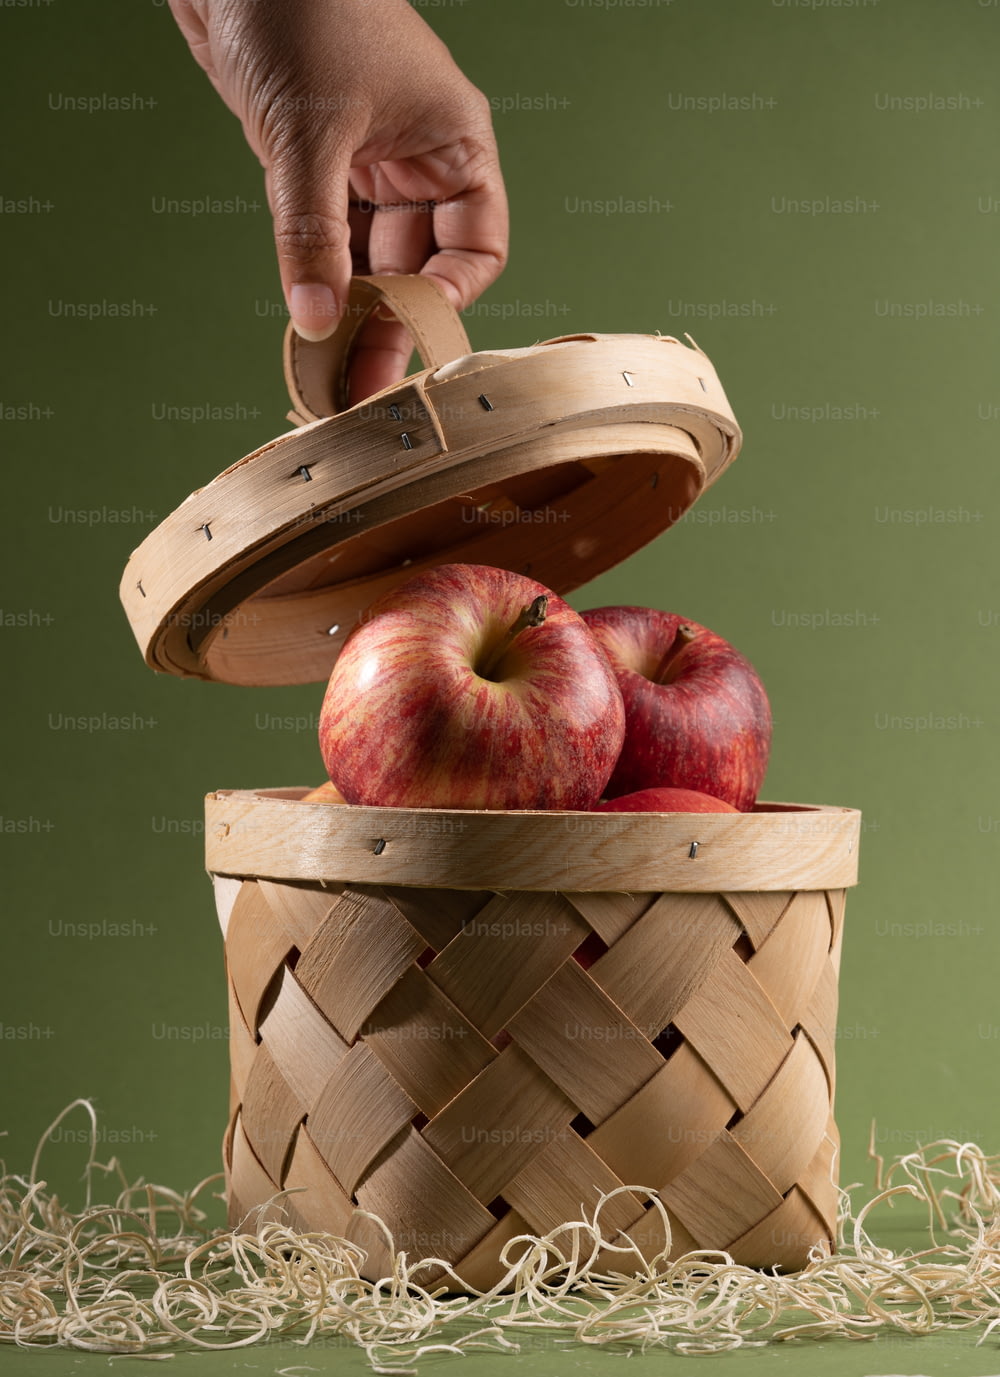 Una persona poniendo una manzana en una canasta